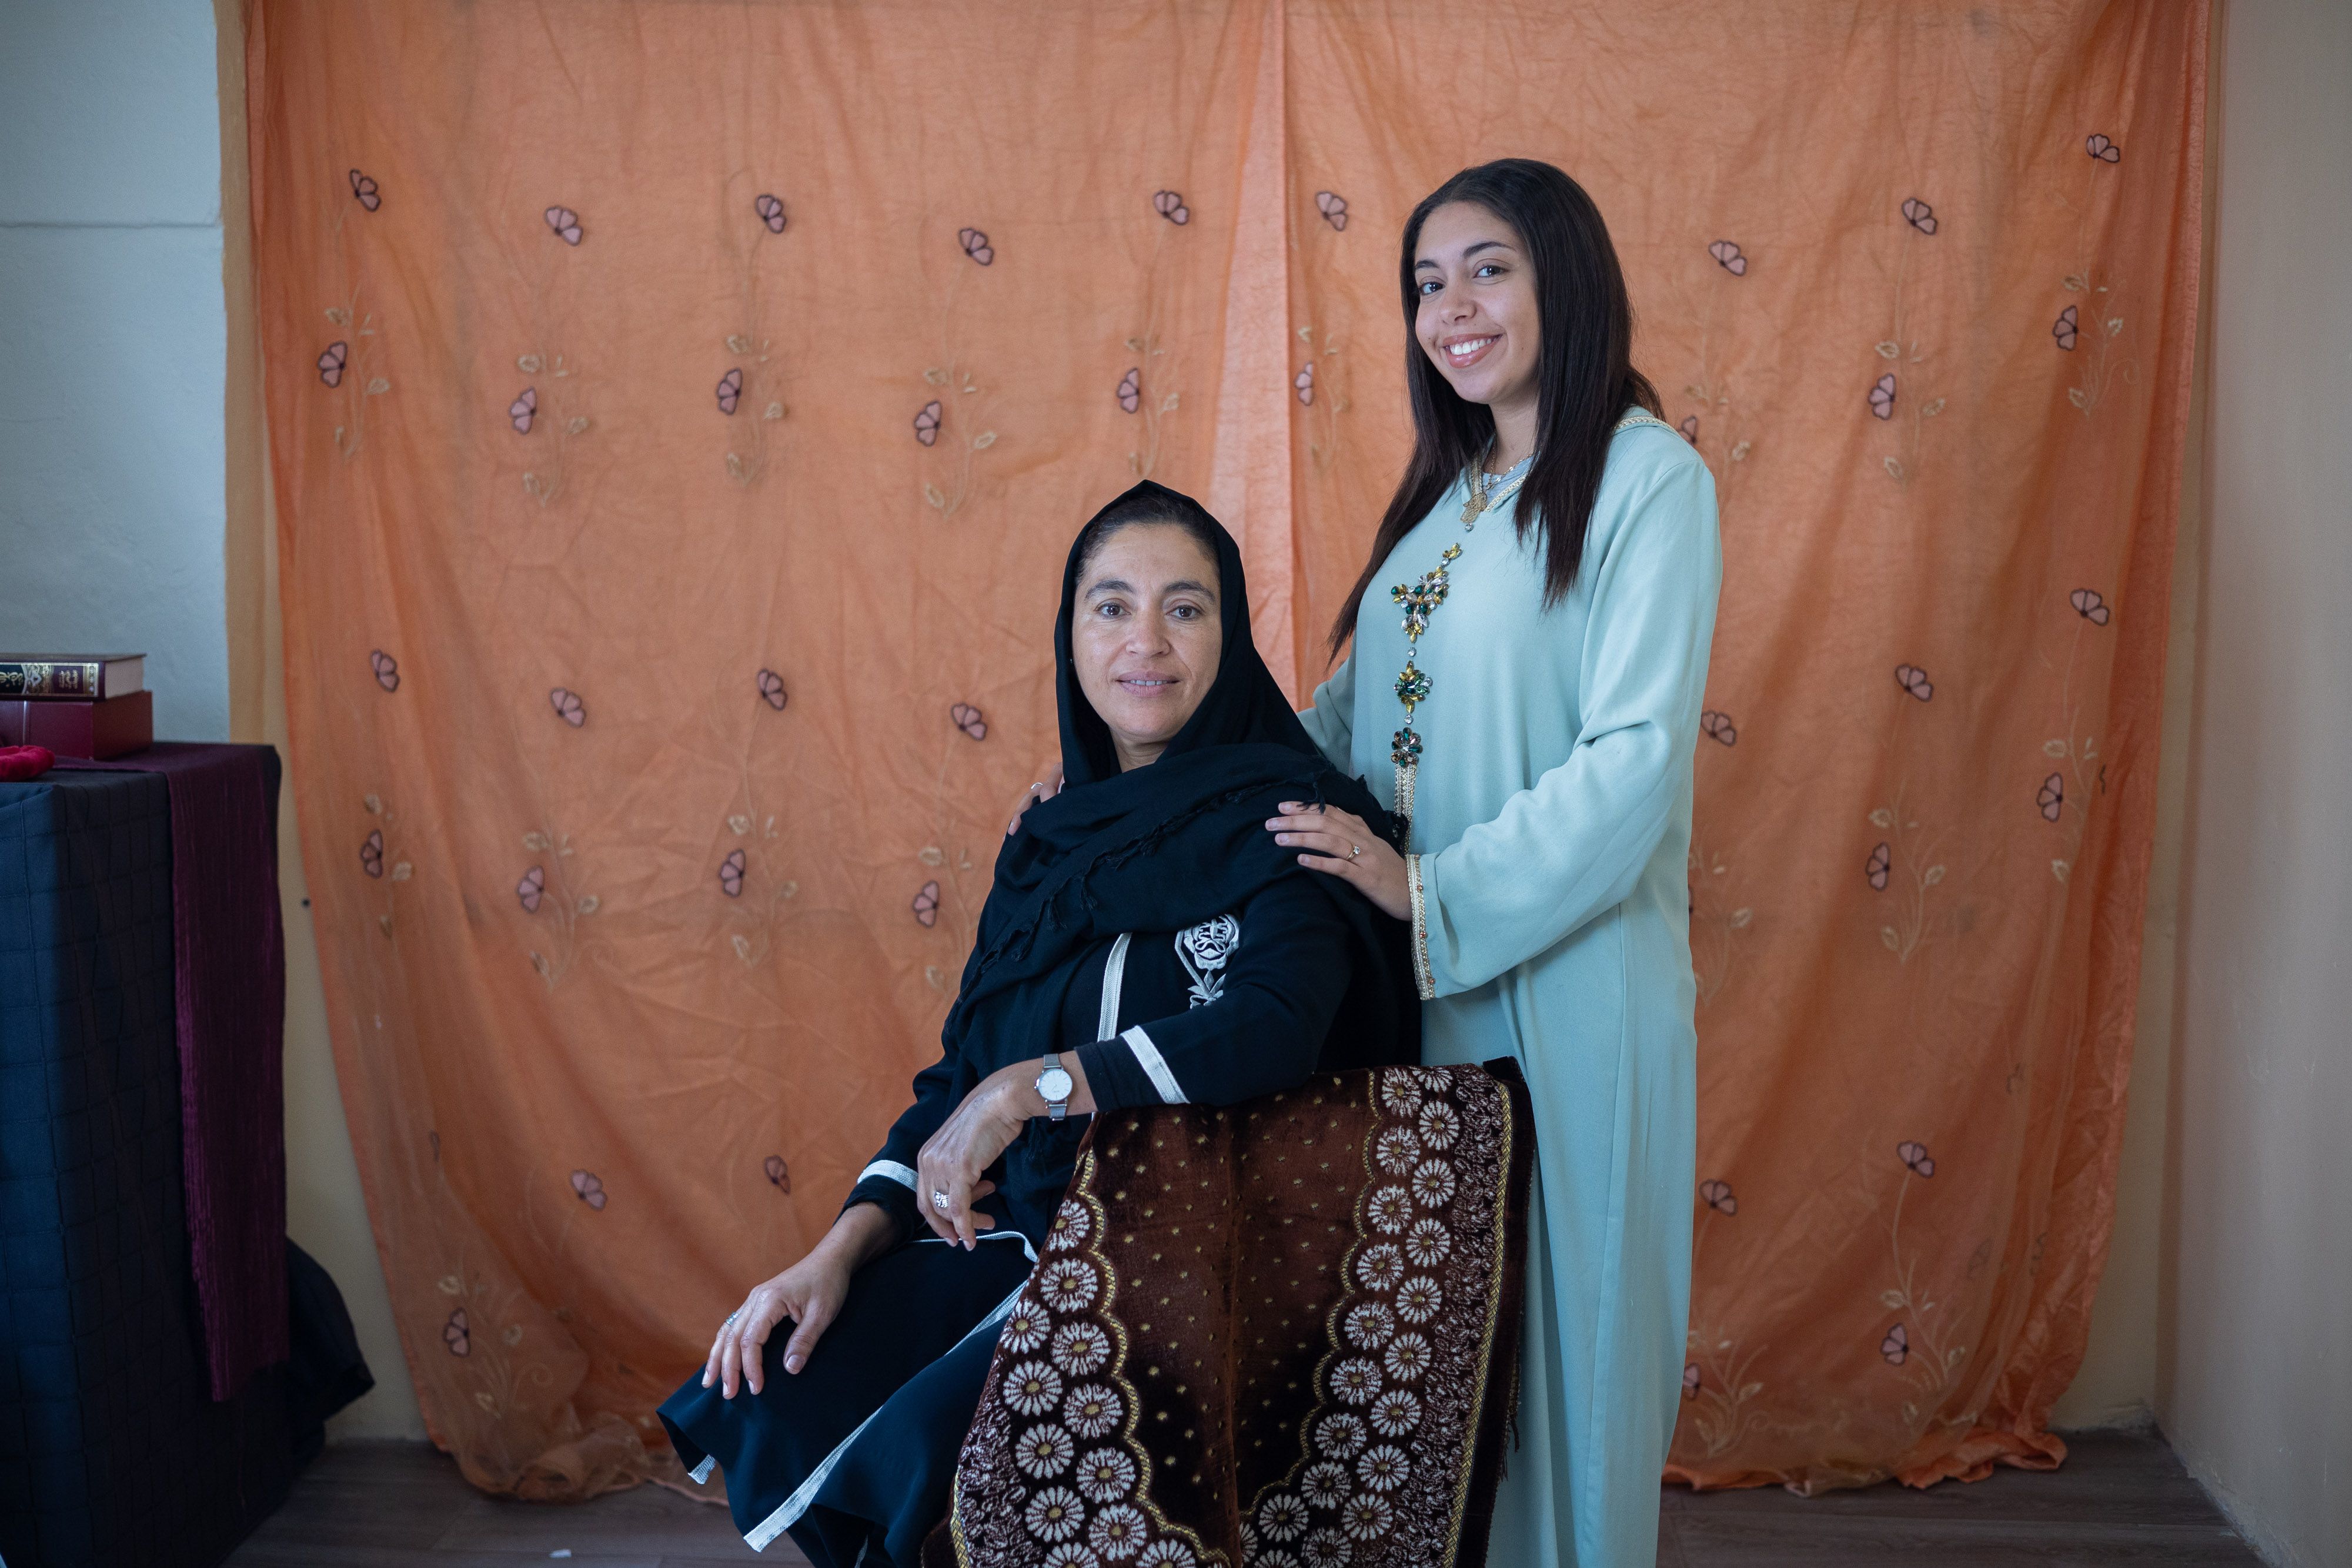 Hanane Gharbaoui y Rabab Kanar, madre e hija de origen marroquí, son musulmanas y están en pleno Ramadán.